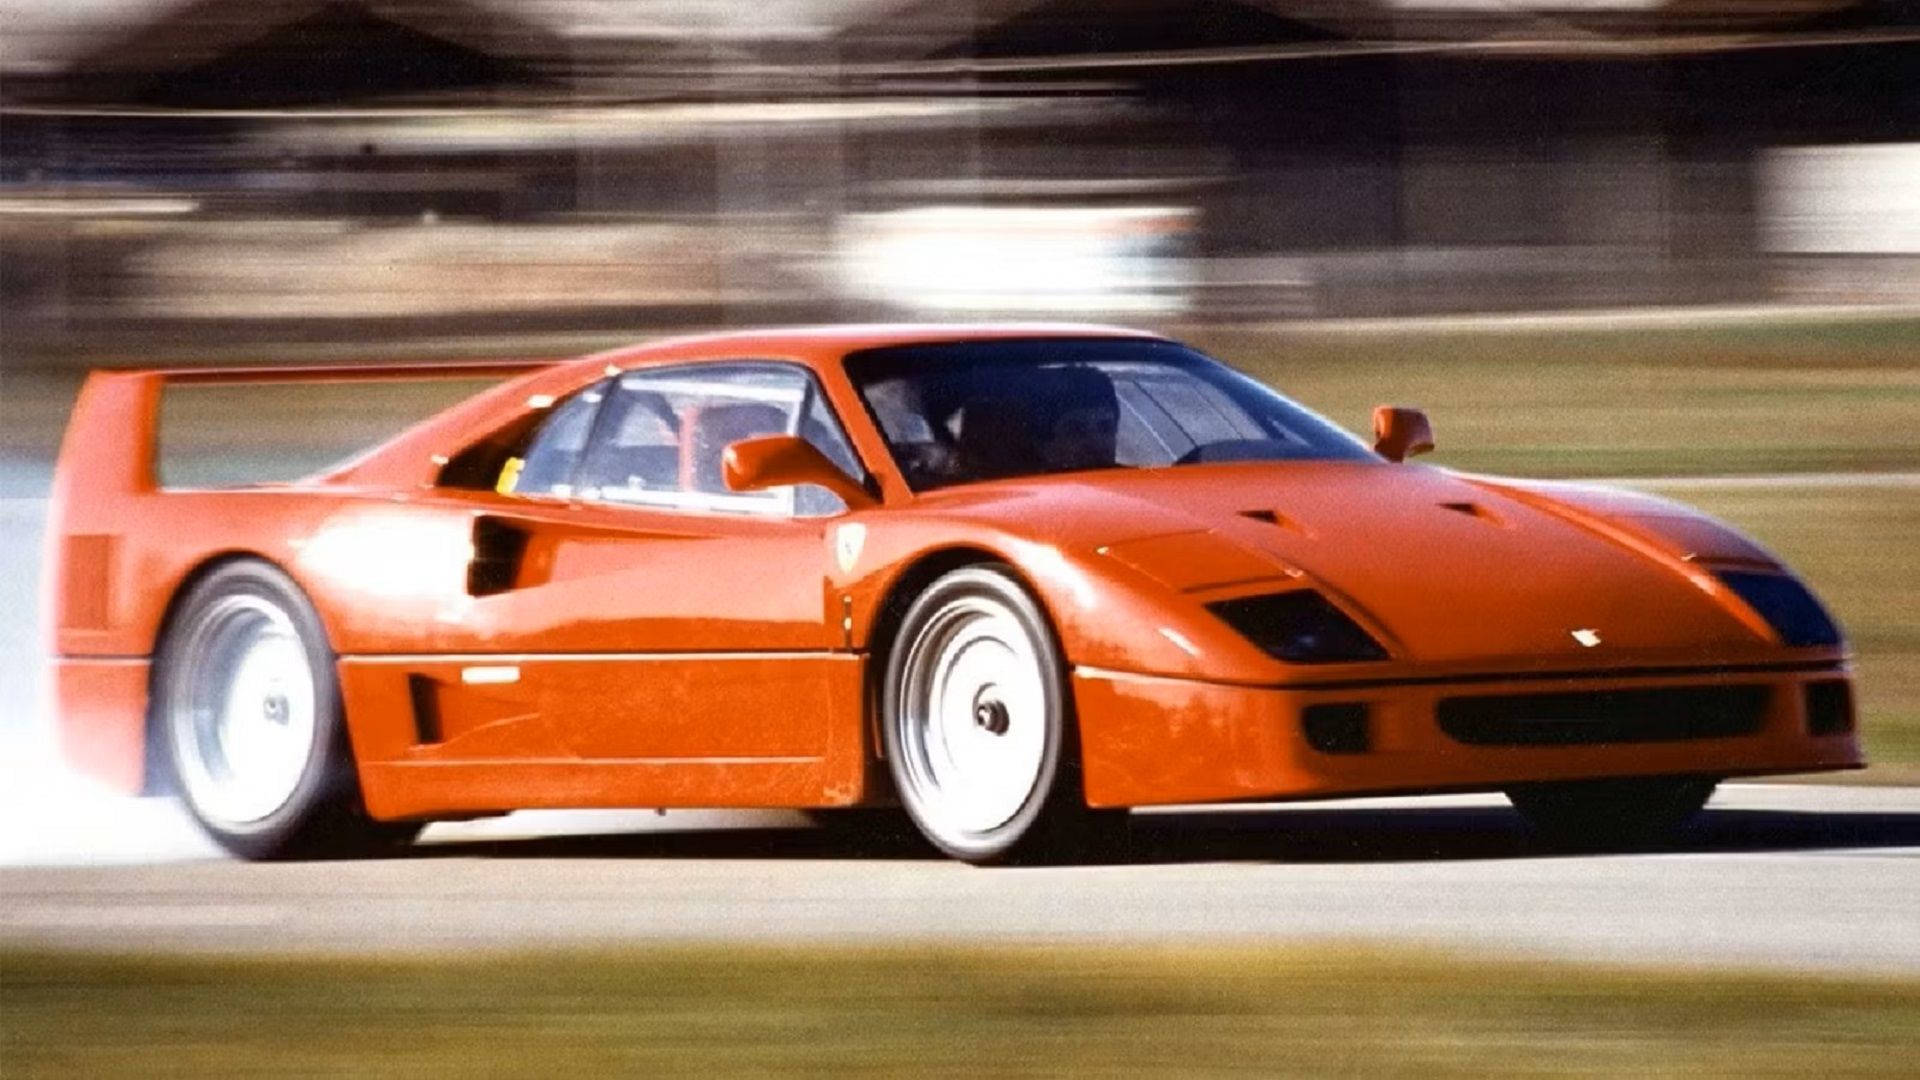 A moving 1987 Ferrari F40 